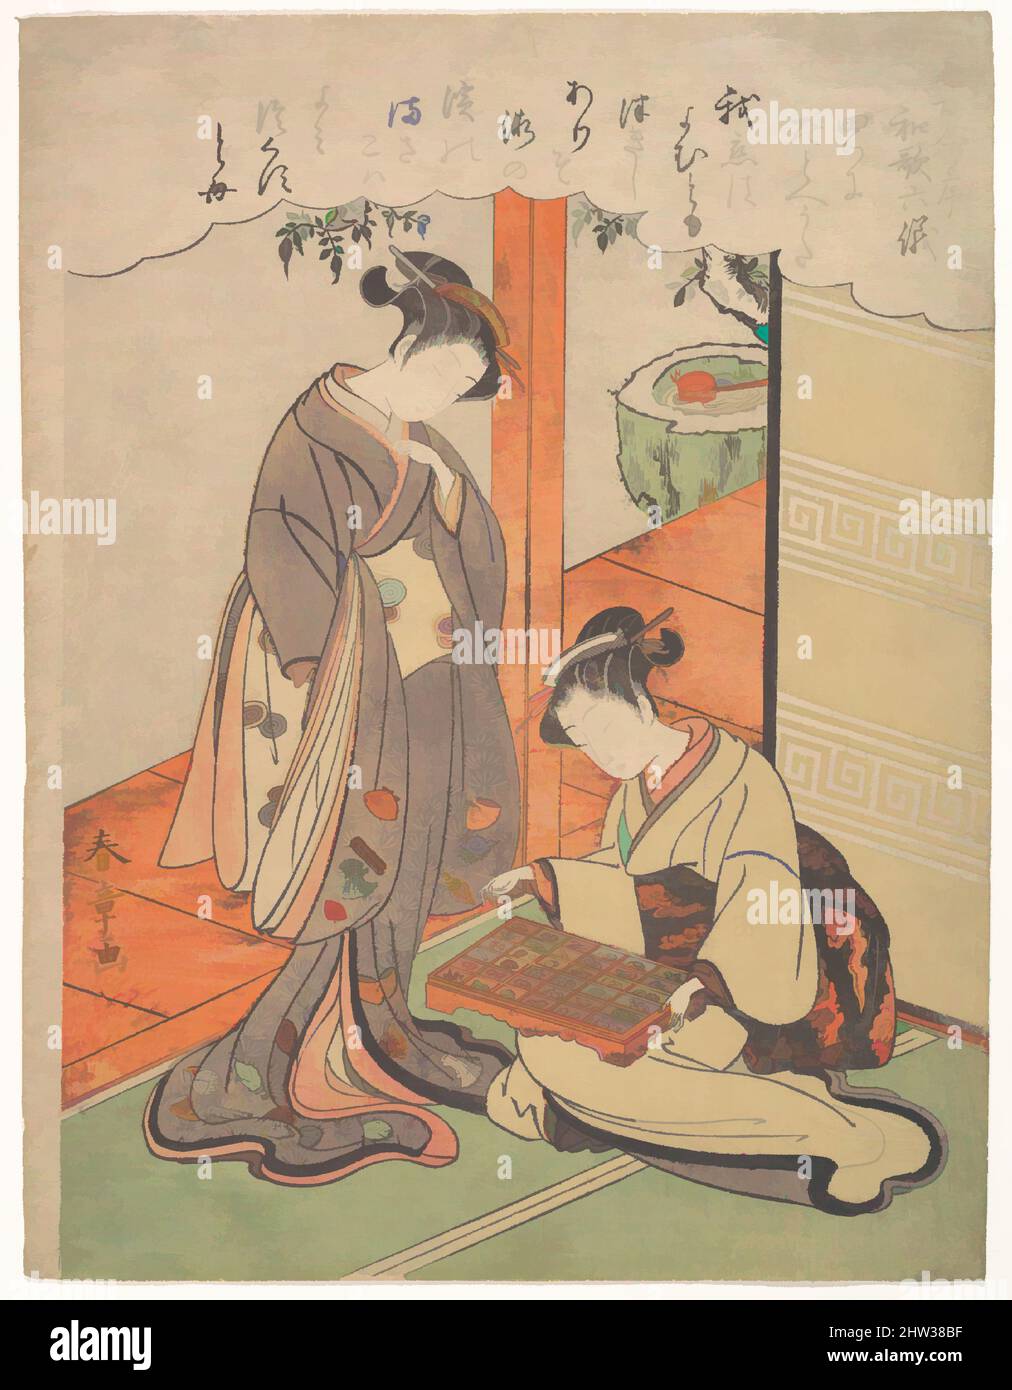 Art inspiré par Tatohe uta, analogie, période Edo (1615–1868), fin 18th siècle, Japon, Imprimé en polychrome sur bois; encre et couleur sur papier, 10 1/8 x 7 3/4 po. (25,7 x 19,7 cm), Prints, Katsukawa Shunshō (japonais, 1726–1792), la beauté de l'imprimé de Shunshō réunit encore plus d'élégance de, œuvres classiques modernisées par Artotop avec un peu de modernité. Formes, couleur et valeur, impact visuel accrocheur sur l'art émotions par la liberté d'œuvres d'art d'une manière contemporaine. Un message intemporel qui cherche une nouvelle direction créative. Artistes qui se tournent vers le support numérique et créent le NFT Artotop Banque D'Images